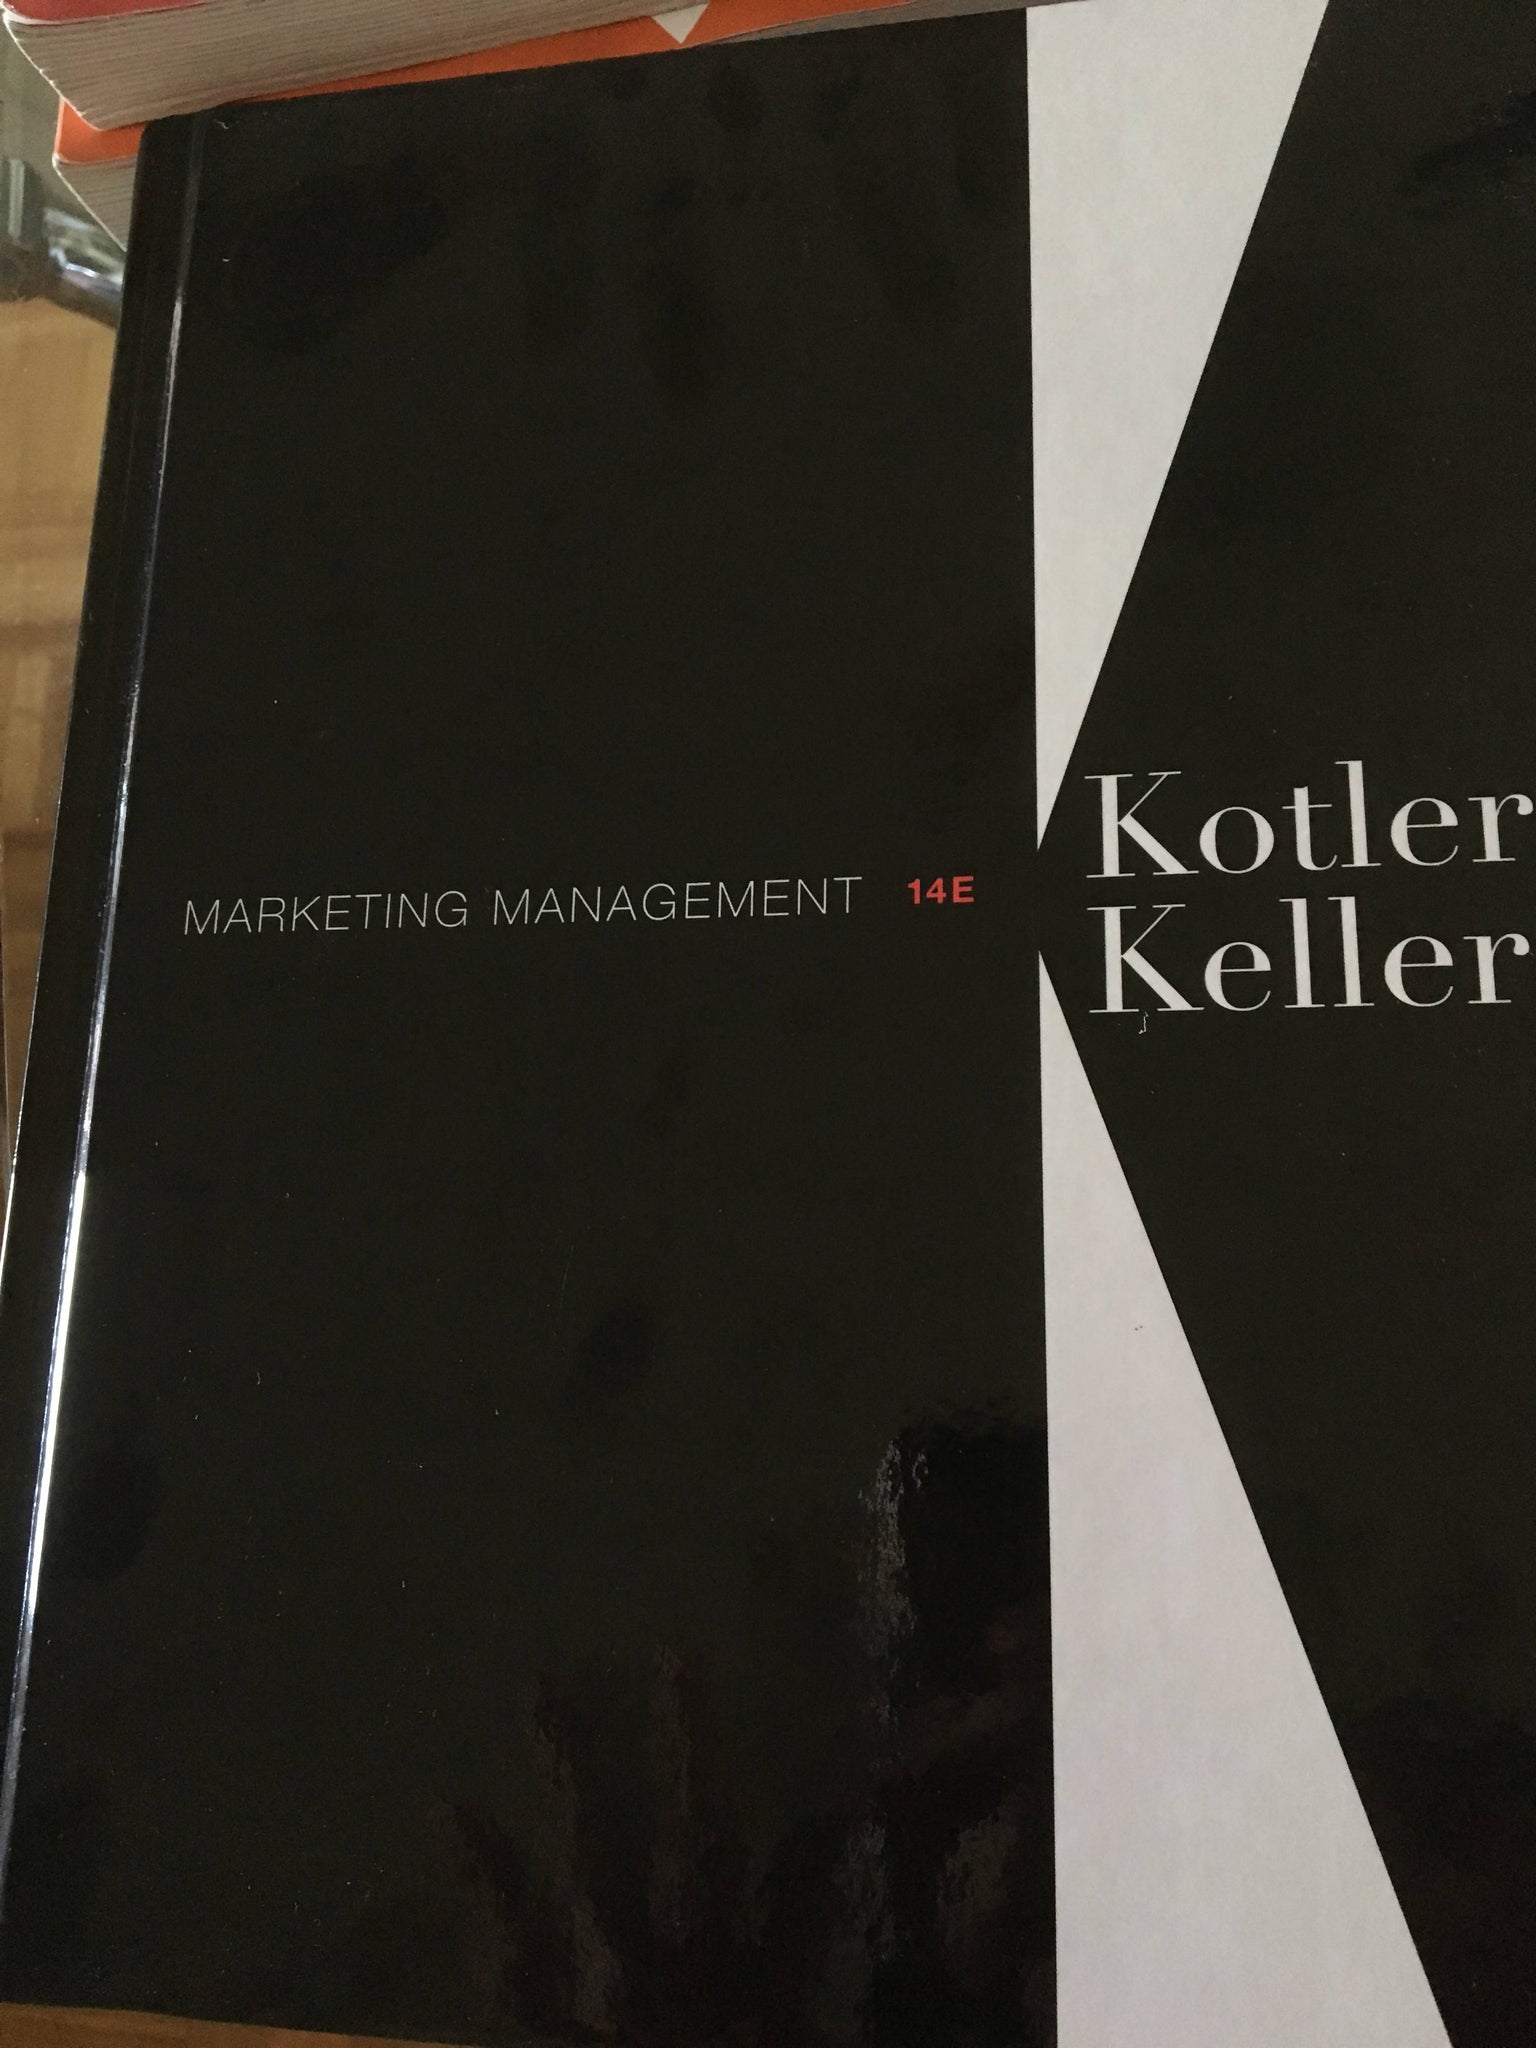 Marketing Mangement - Kotler Keller (14E)